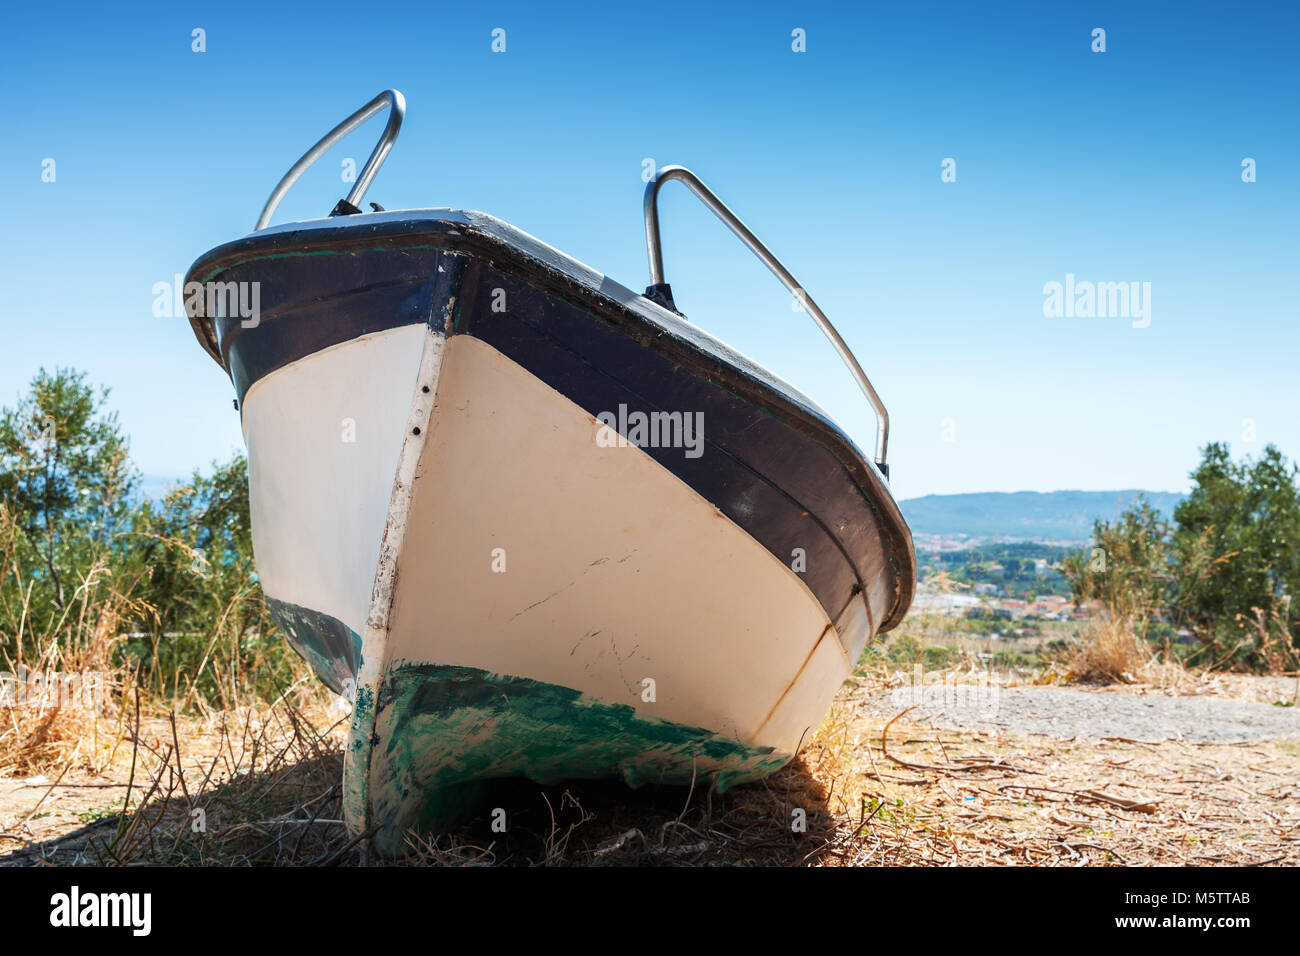 White fishing row boat on the coast. Summer landscape of Zakynthos island, Greece Stock Photo